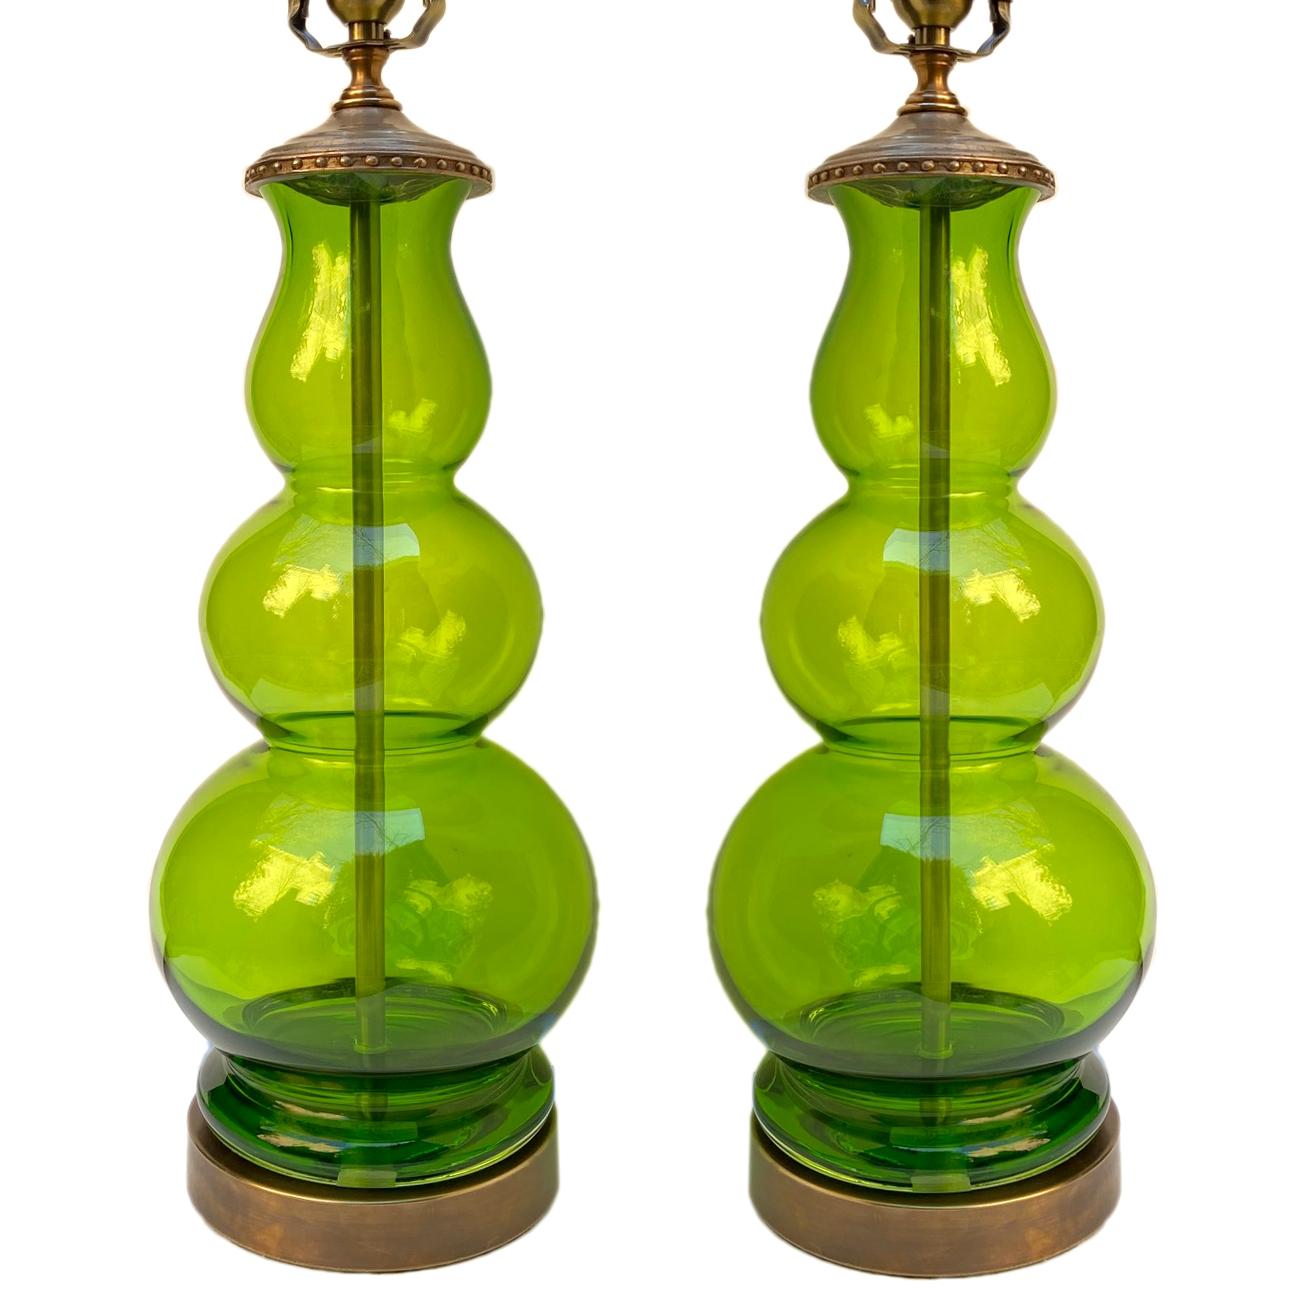 Zwei italienische Porzellanlampen aus grünem mundgeblasenem Glas aus den 1950er Jahren.

Abmessungen:
Höhe des Körpers 18